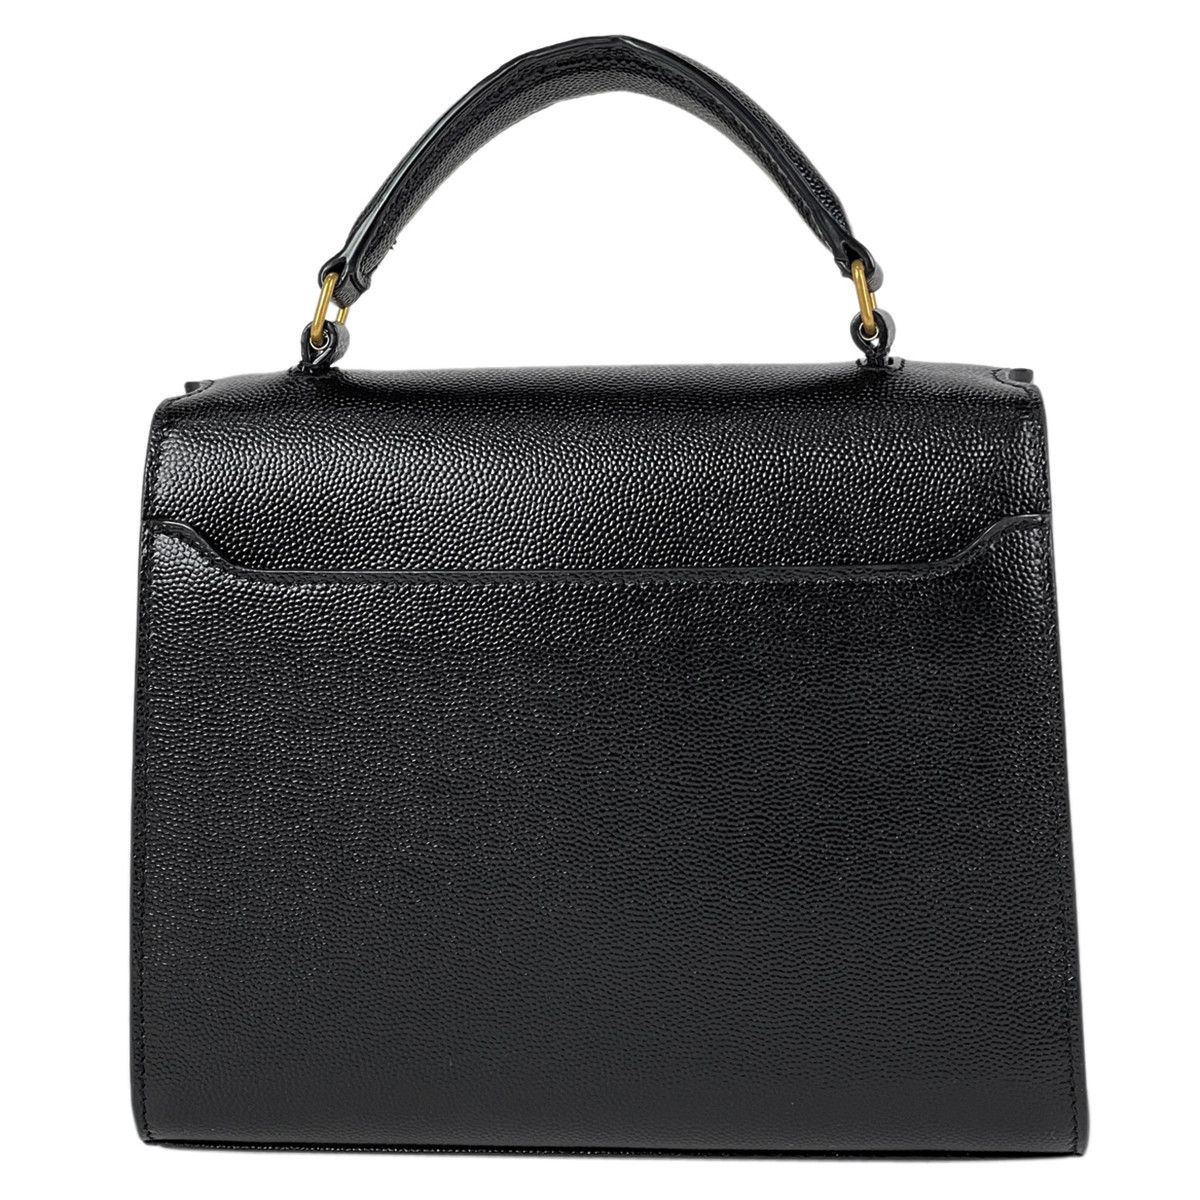 Yves Saint Laurent Saint Laurent Mini Handle Bag Leather Black Size ONE SIZE - 3 Thumbnail